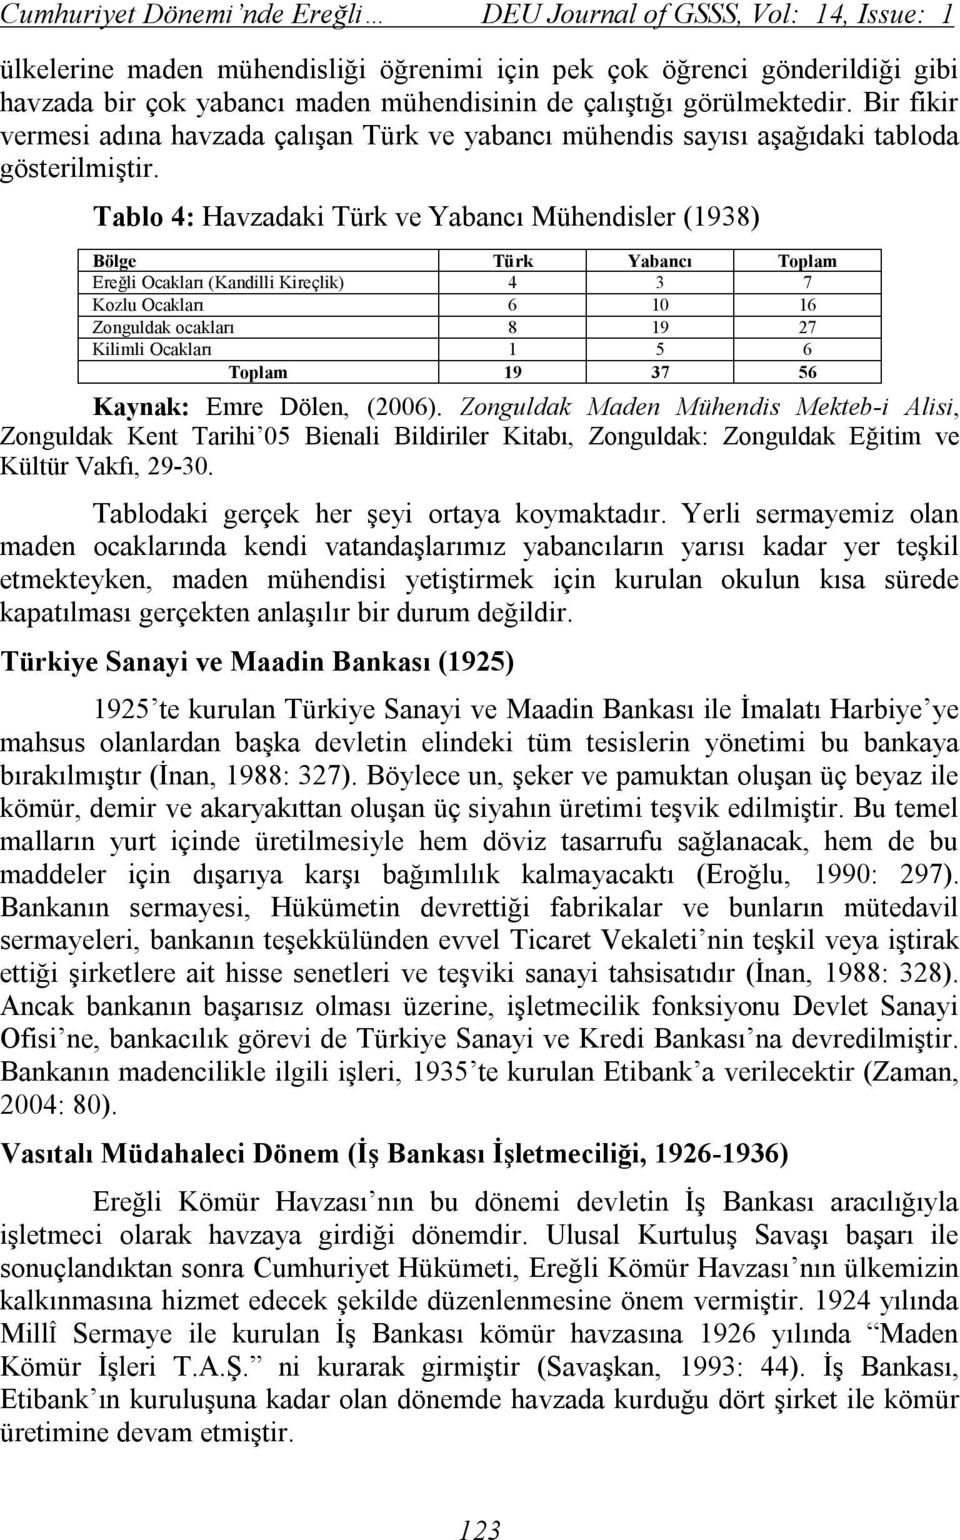 Tablo 4: Havzadaki Türk ve Yabancı Mühendisler (1938) Bölge Türk Yabancı Toplam Ereğli Ocakları (Kandilli Kireçlik) 4 3 7 Kozlu Ocakları 6 10 16 Zonguldak ocakları 8 19 27 Kilimli Ocakları 1 5 6